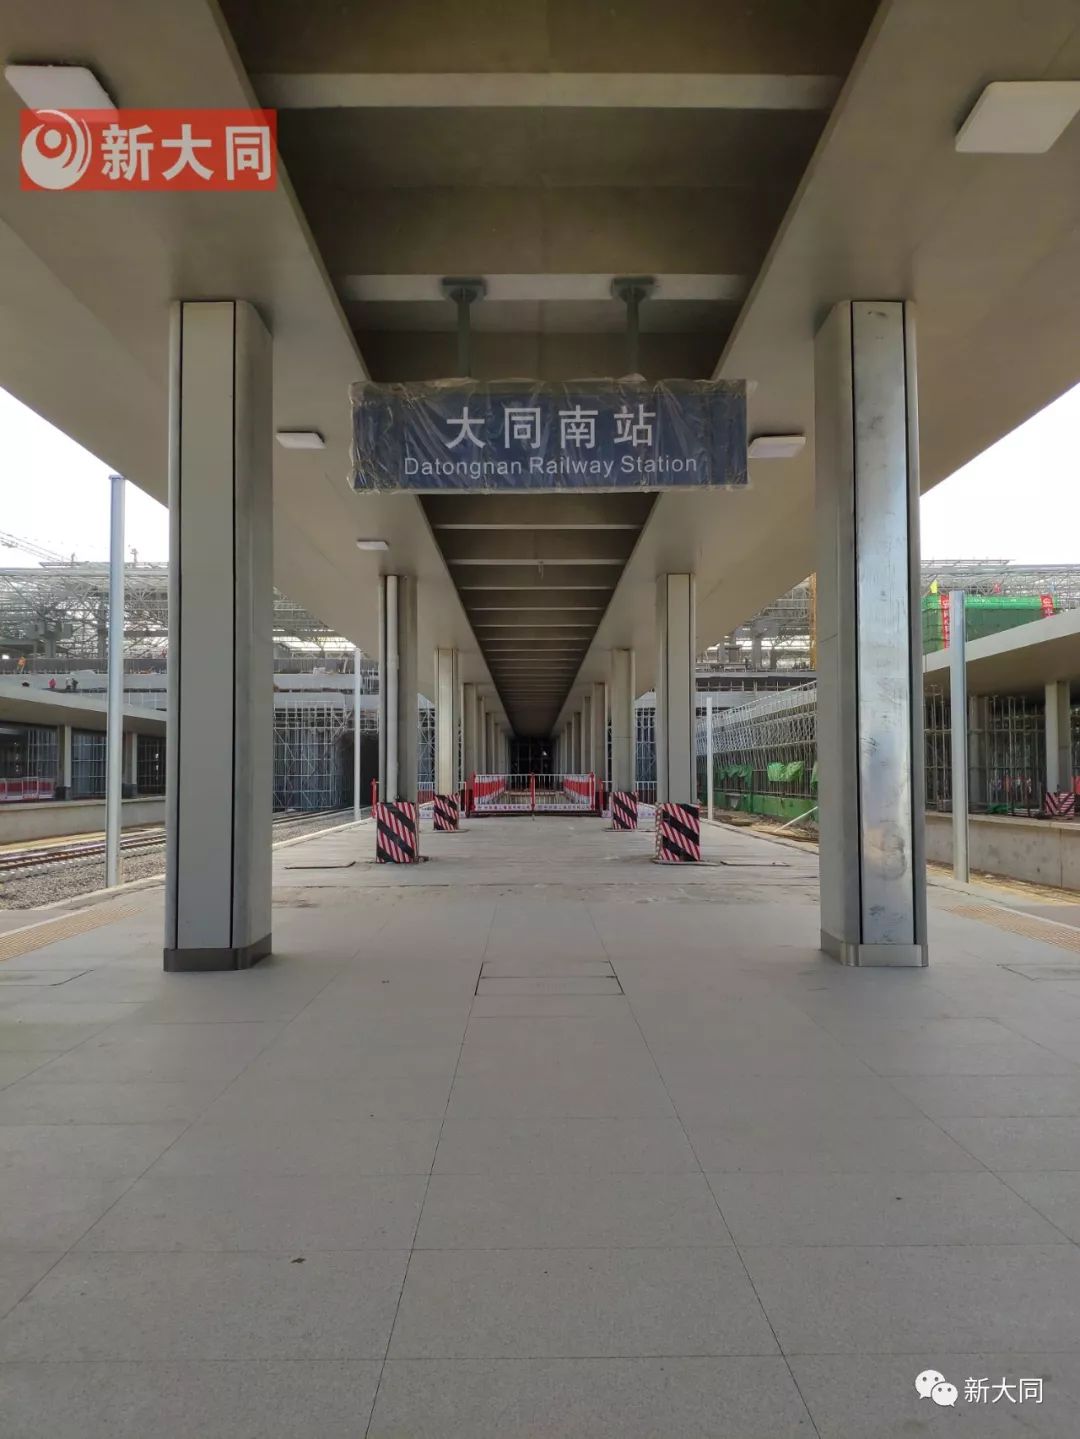 大同火车站内部图片图片